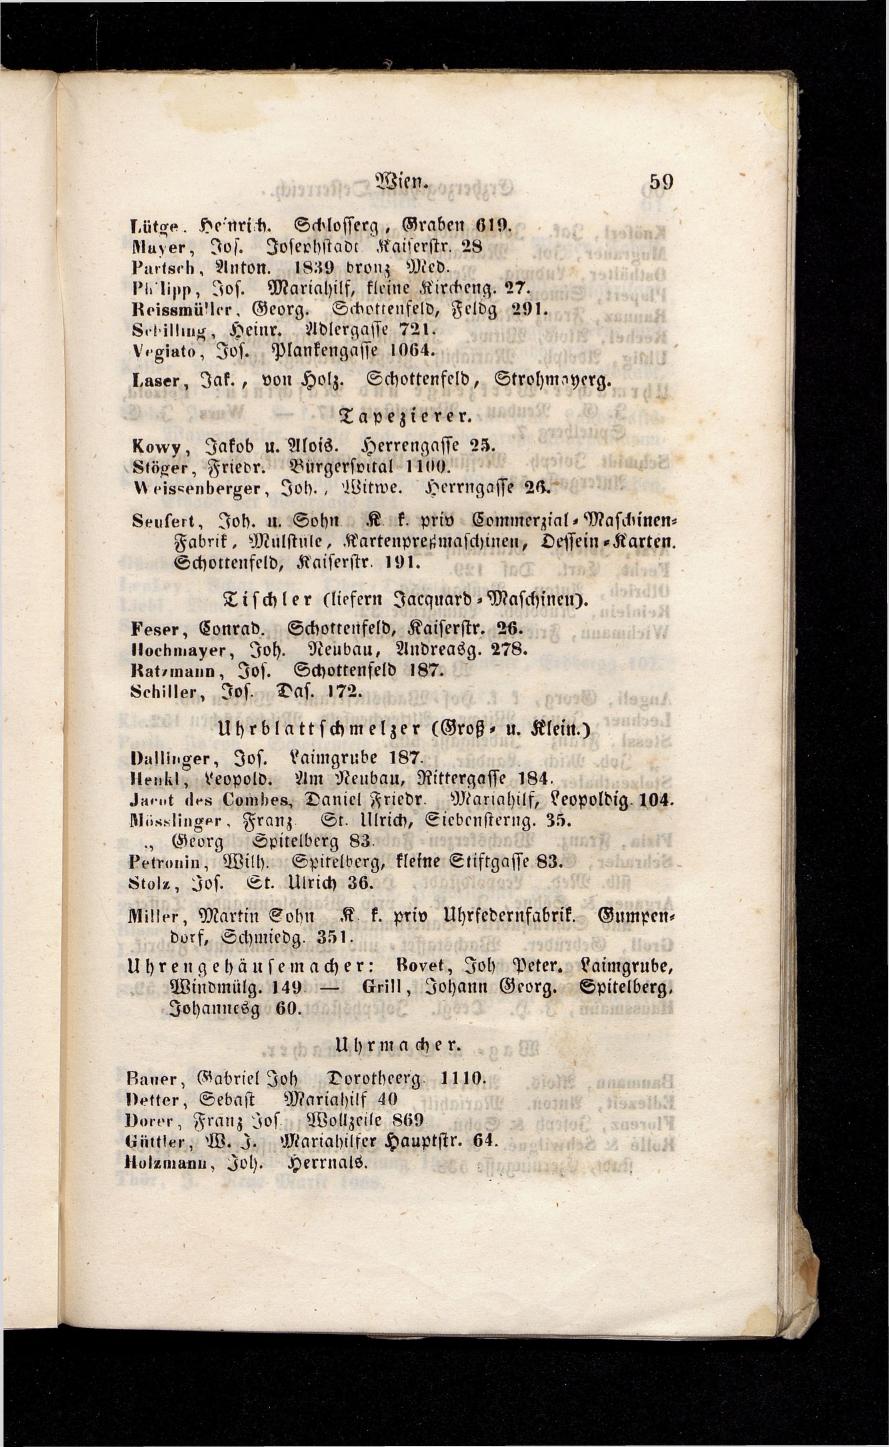 Grosses Adressbuch der Kaufleute. No. 13. Oesterreich ober u. unter der Enns 1844 - Seite 63